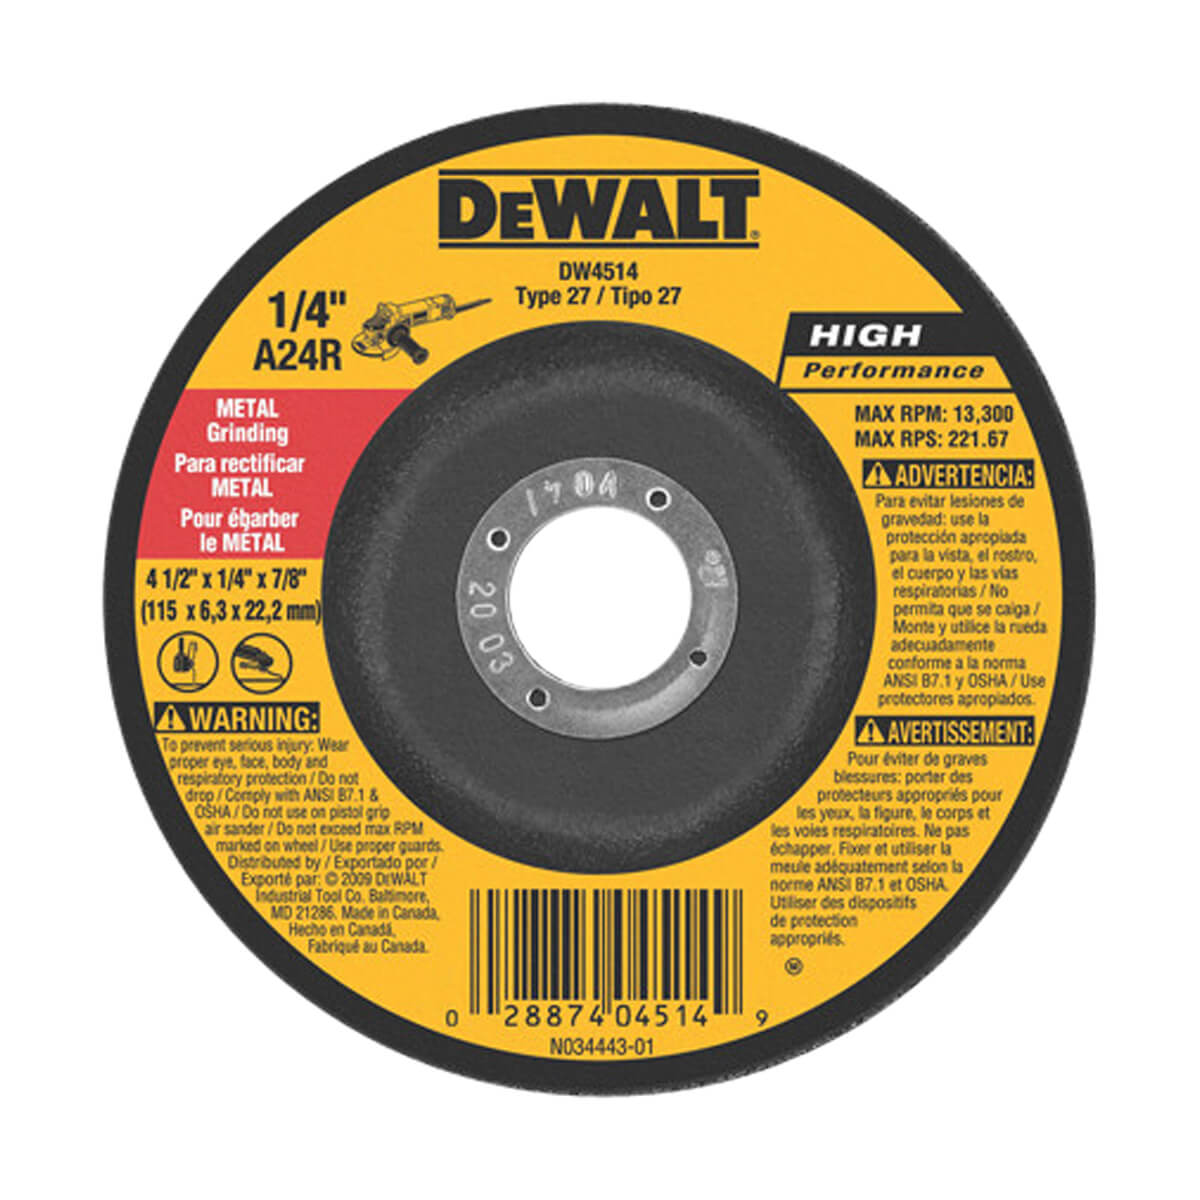 DEWALT General Purpose Metal Grinding Wheel - 5-in x 1/4-in x 7/8-in